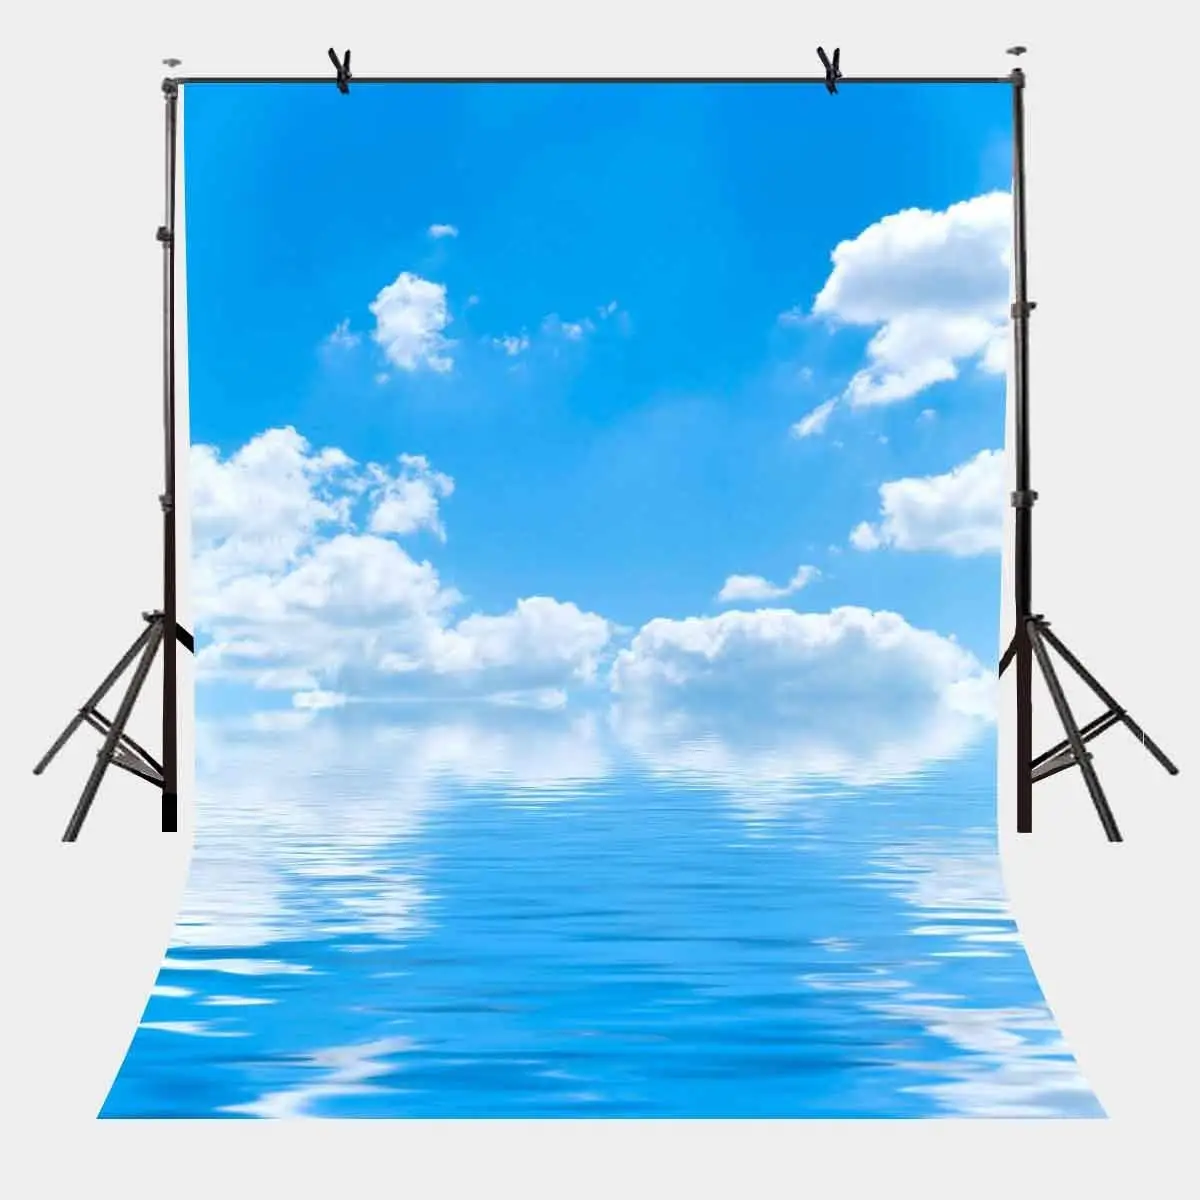 Фон с голубым небом размером 5х7 футов, белыми облаками и морской водой, минималистичный тематический фон для личной вечеринки